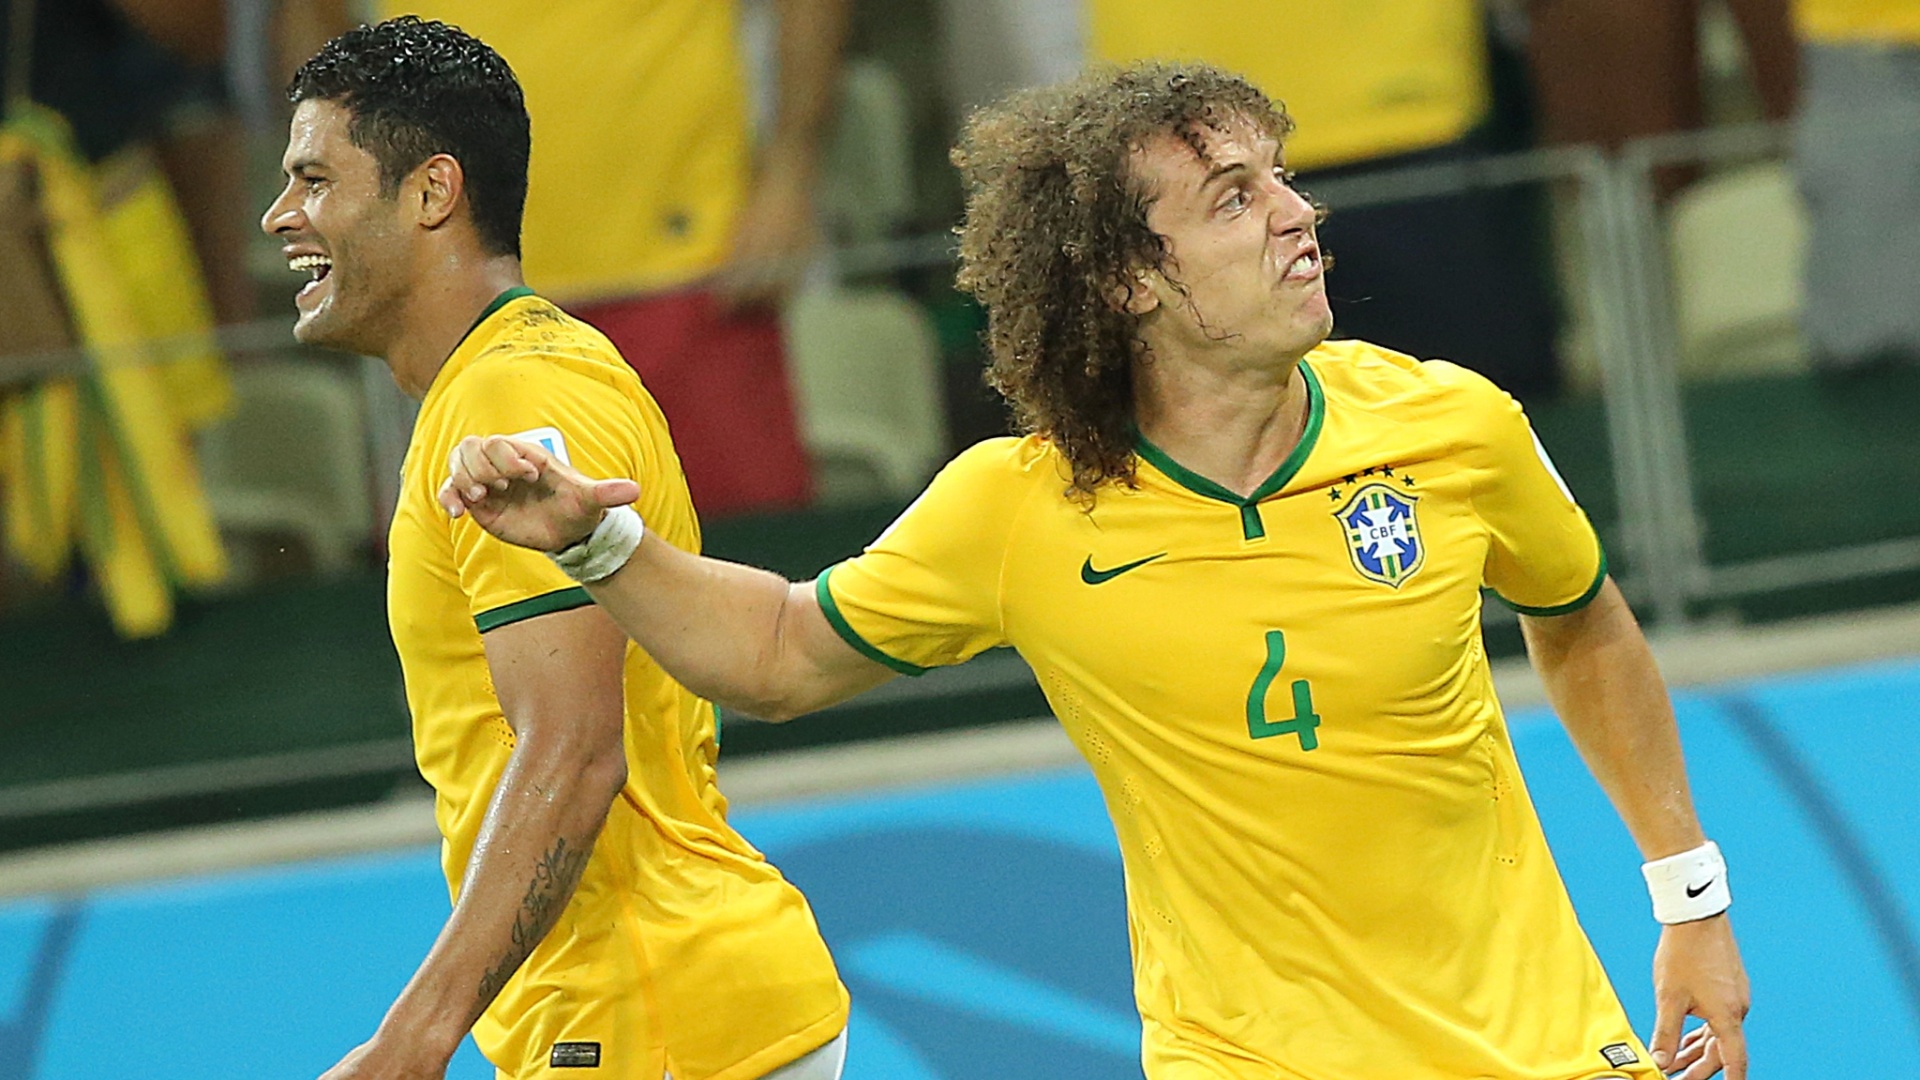 04.jul.2014 - Ao lado de Hulk, David Luiz comemora após marcar o segundo gol do Brasil na vitória por 2 a 1 sobre a Colômbia, no Castelão